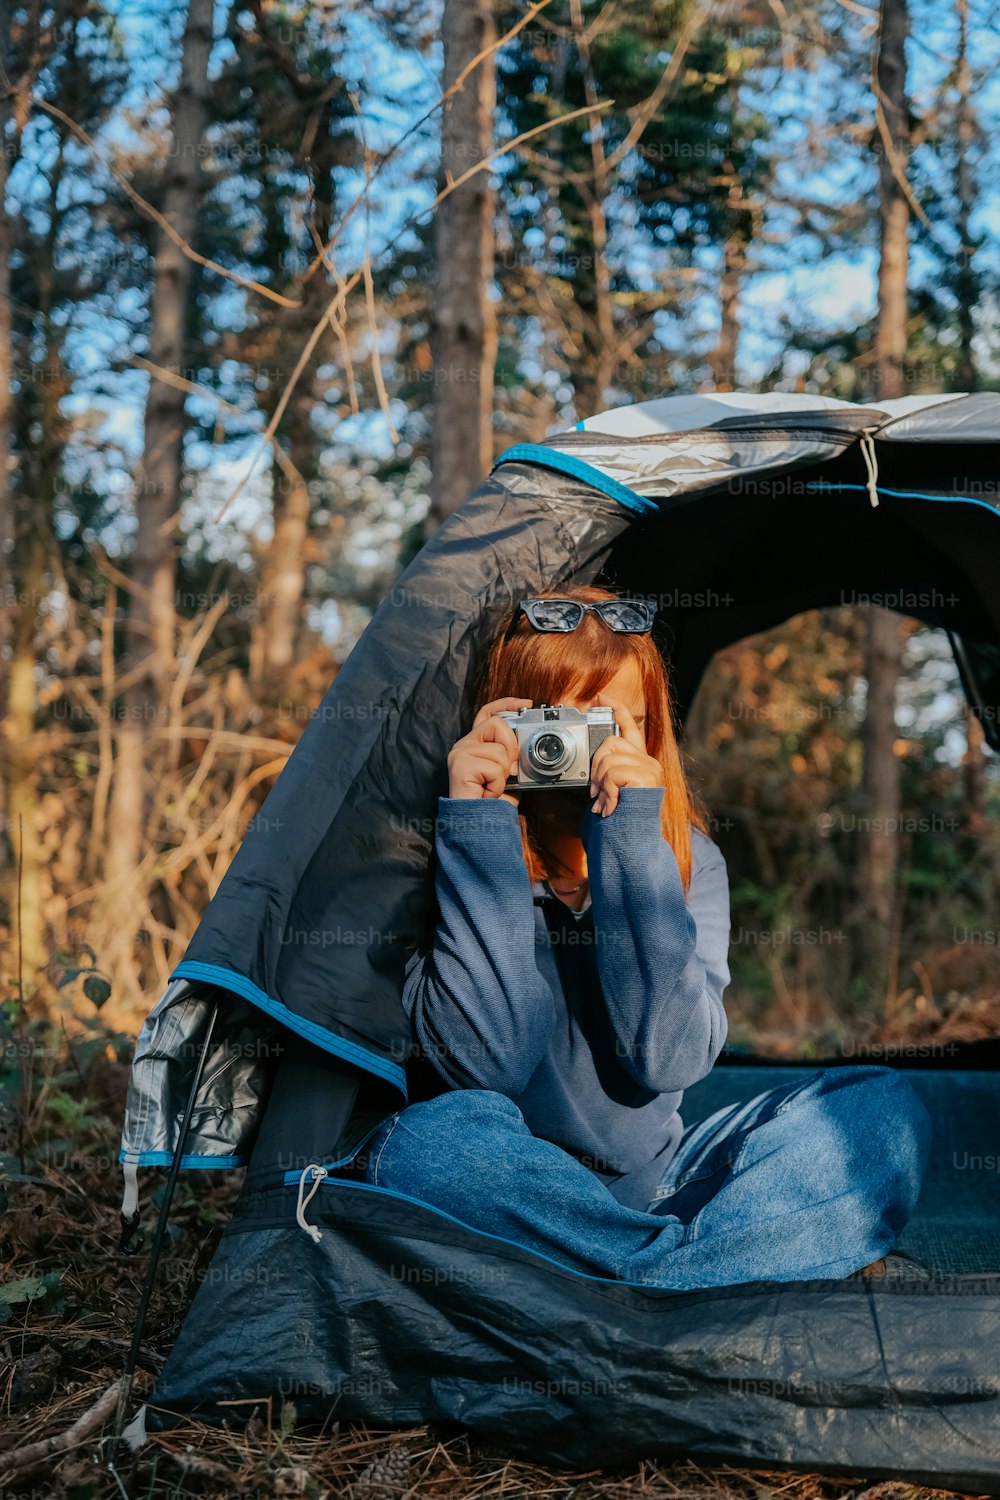 Una donna che scatta una foto di se stessa in una tenda